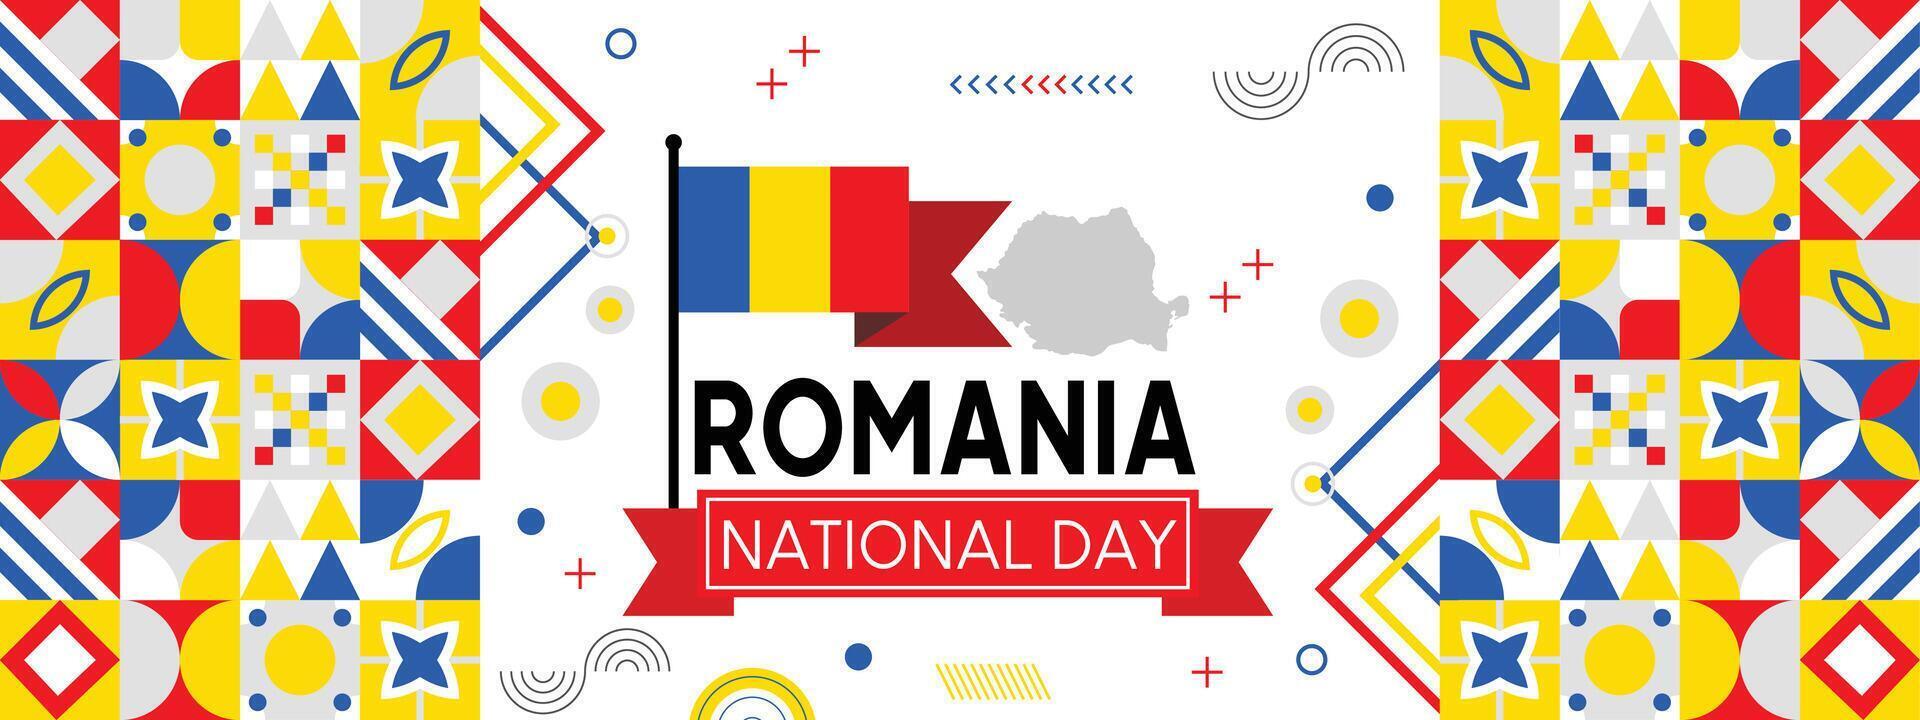 Rumänien National Tag Banner mit rumänisch Flagge Farben Thema Hintergrund und geometrisch abstrakt retro modern Blau Gelb rot Design. vektor